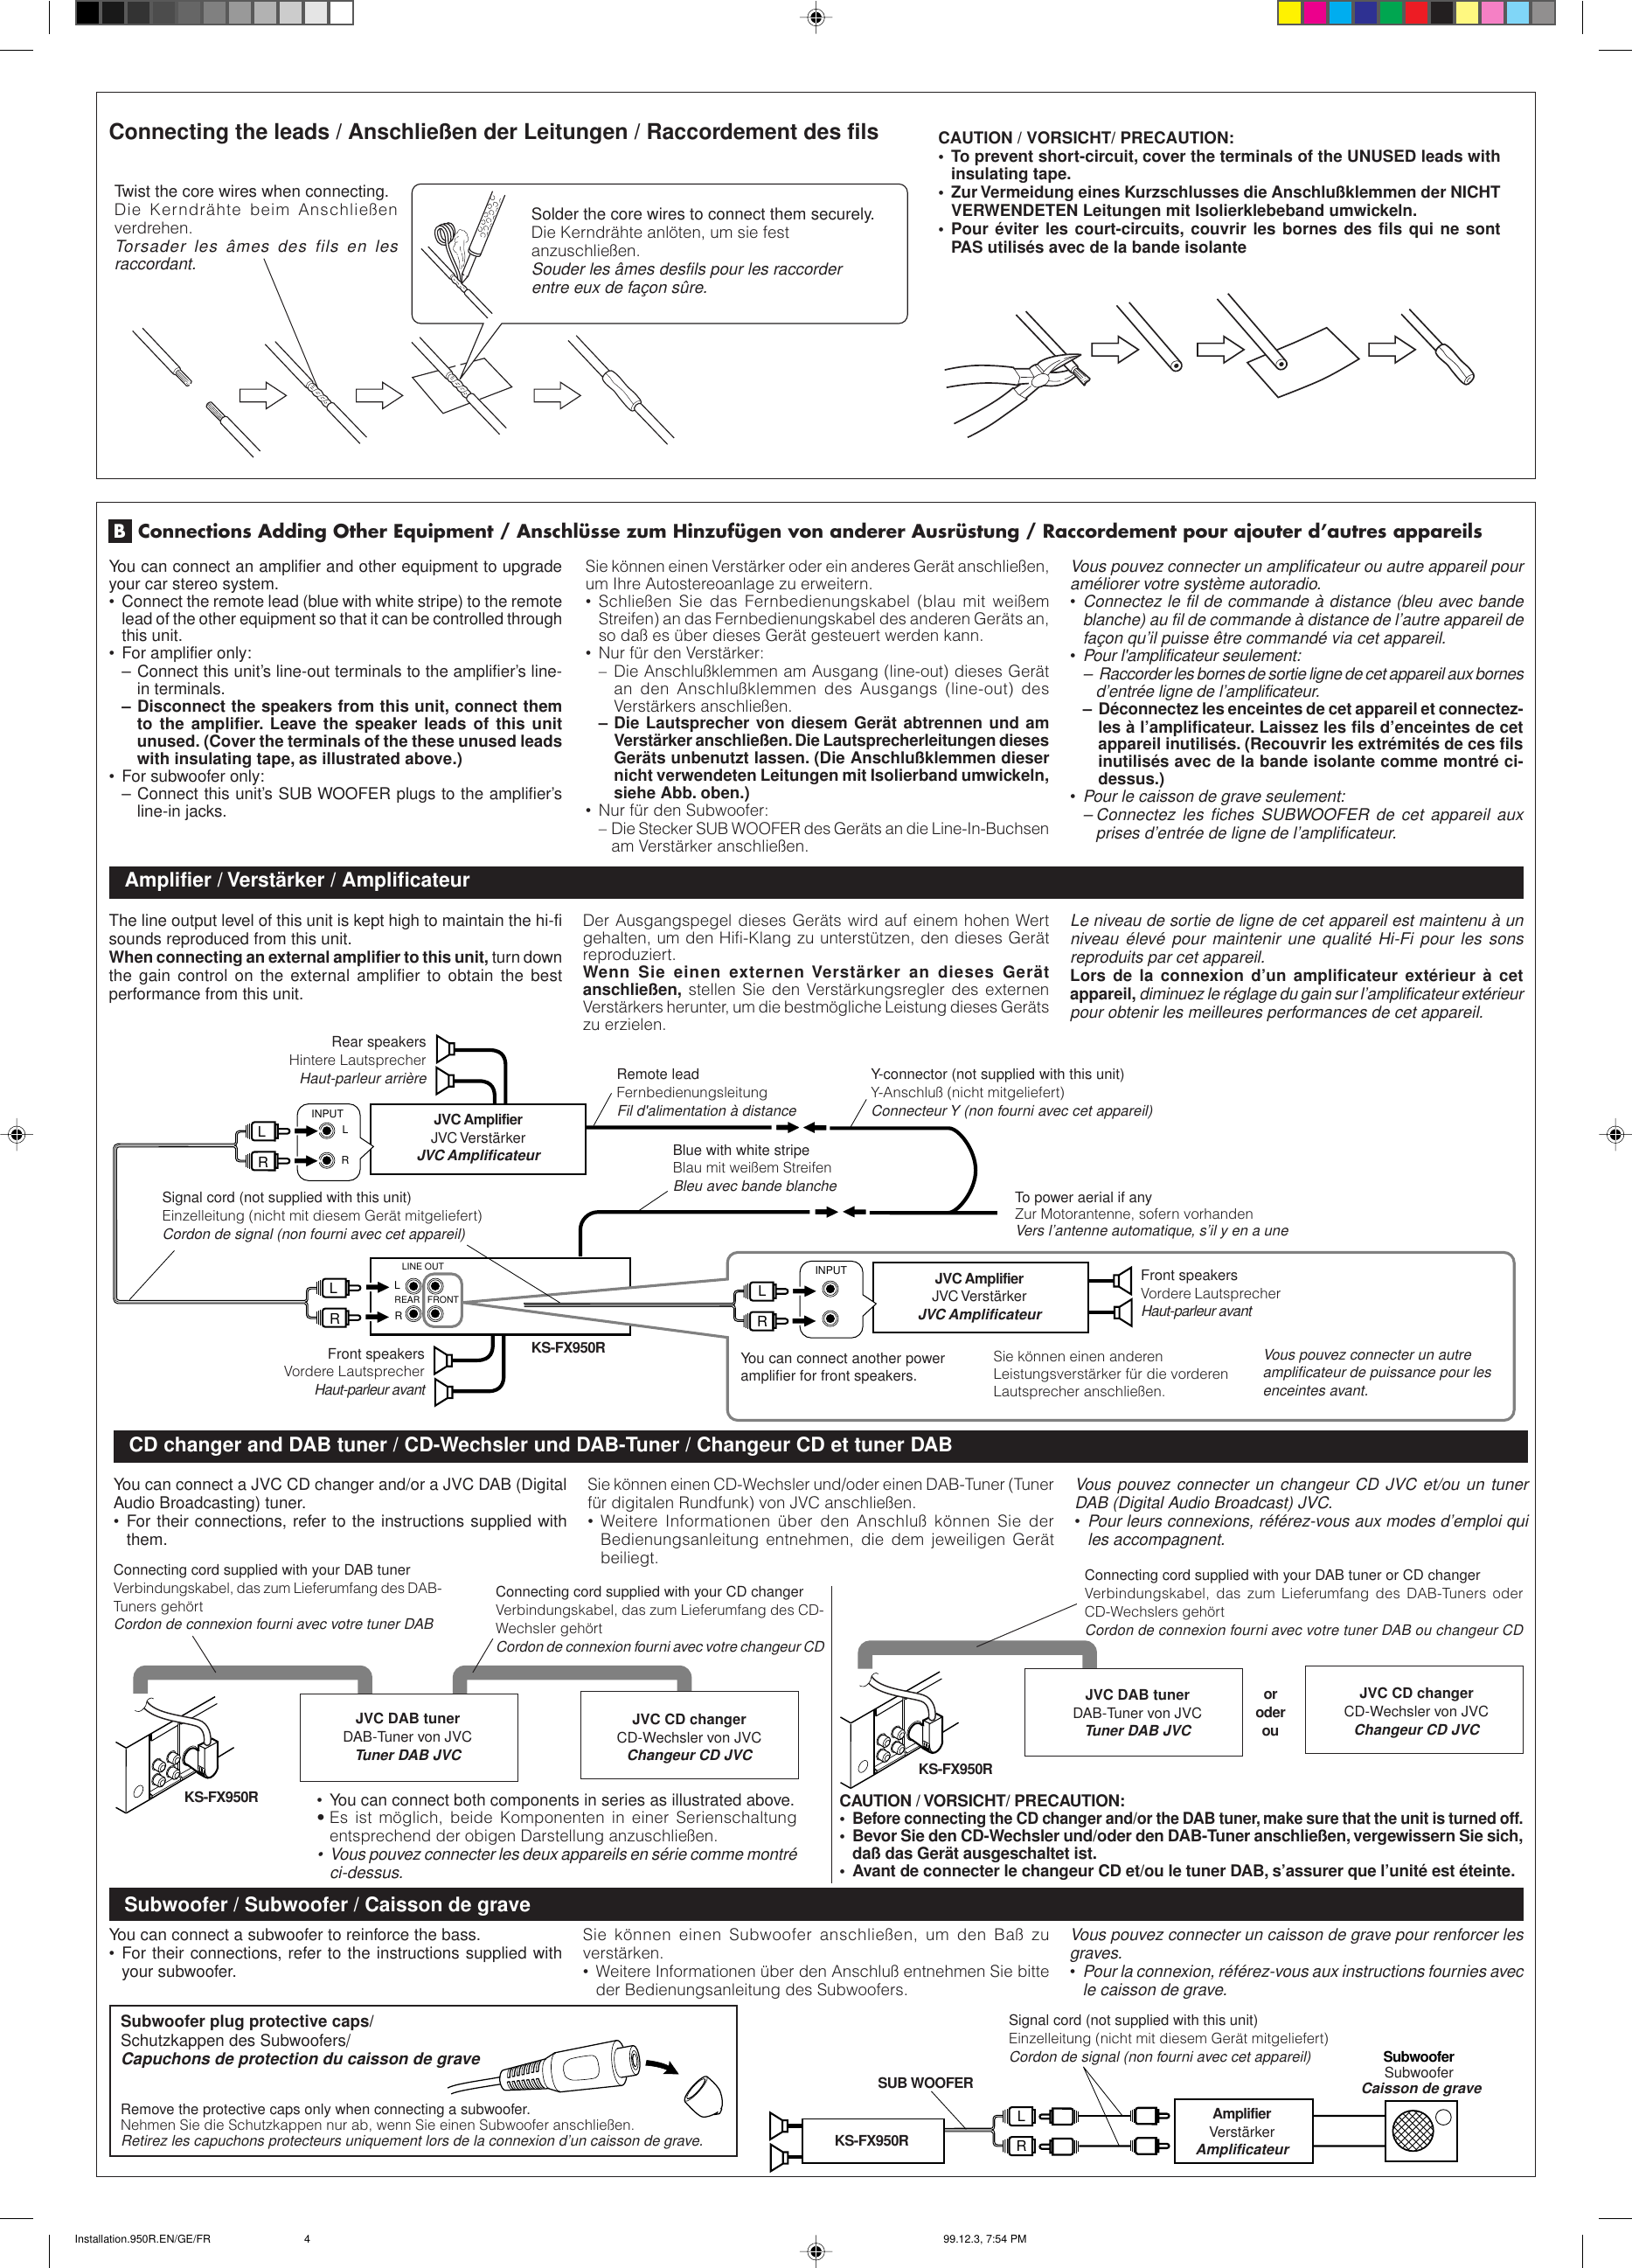 Page 4 of 4 - JVC KS-FX950R User Manual FSUN3124-T211